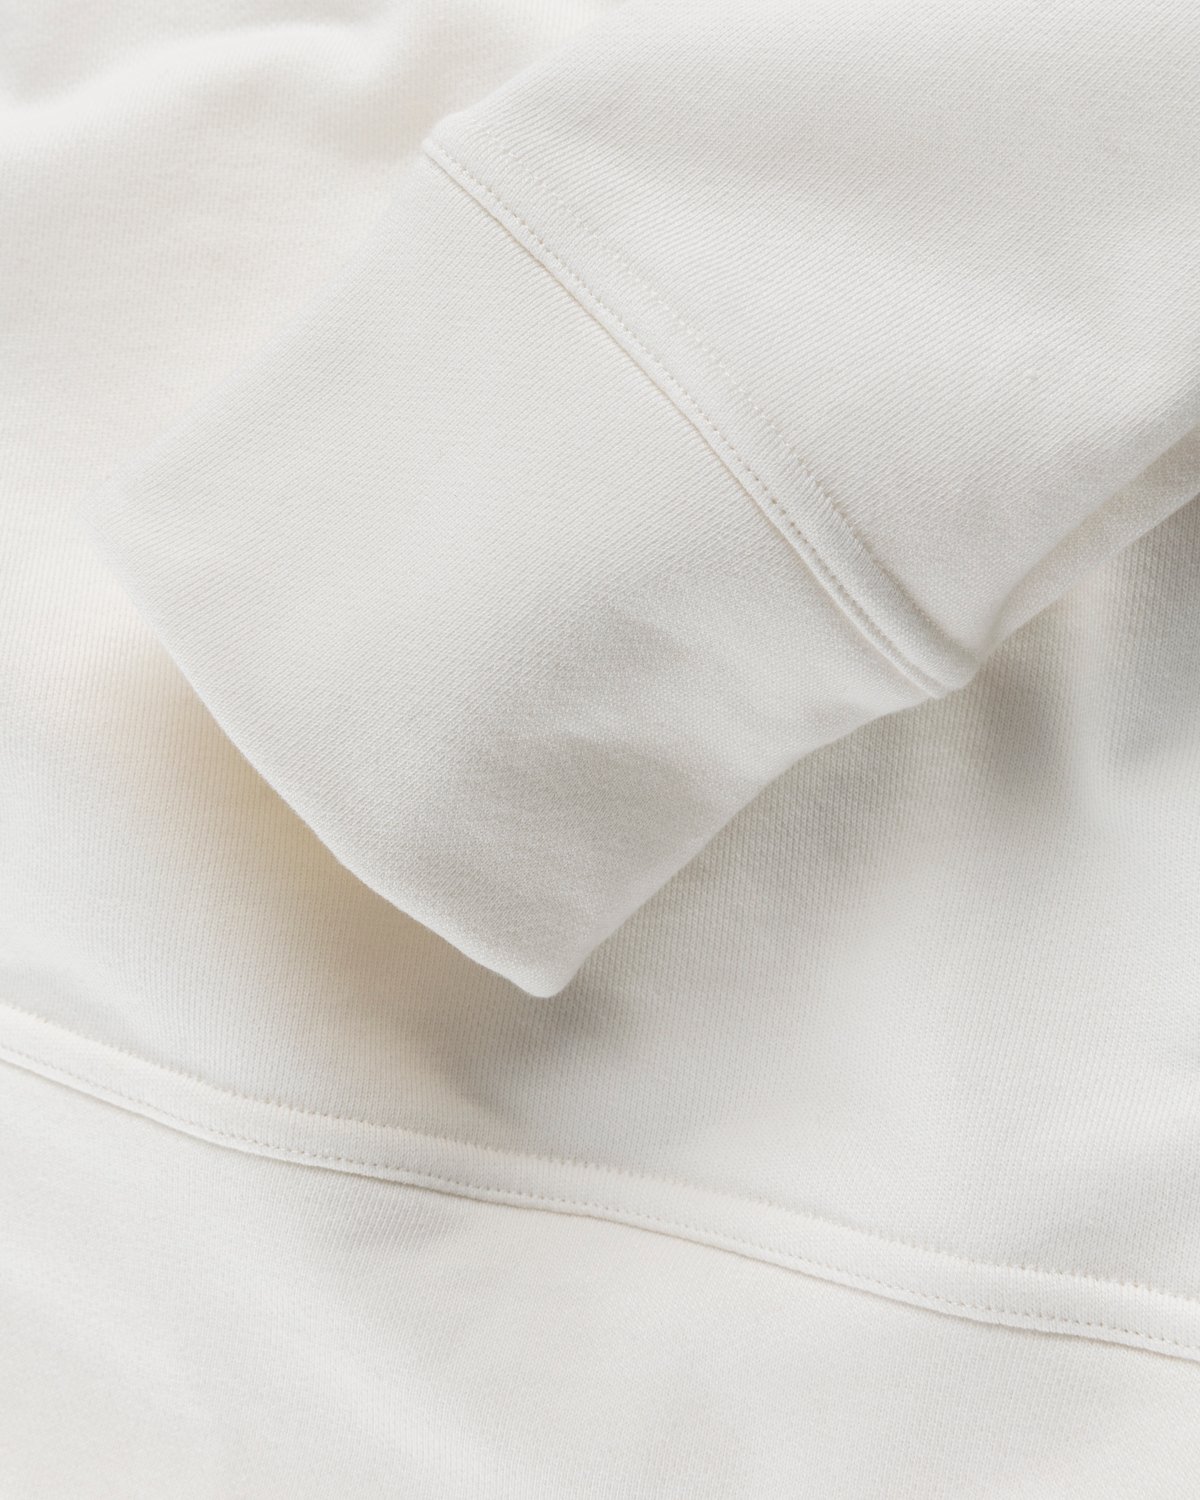 Jil Sander - Logo Hoodie Natural - Clothing - Beige - Image 4